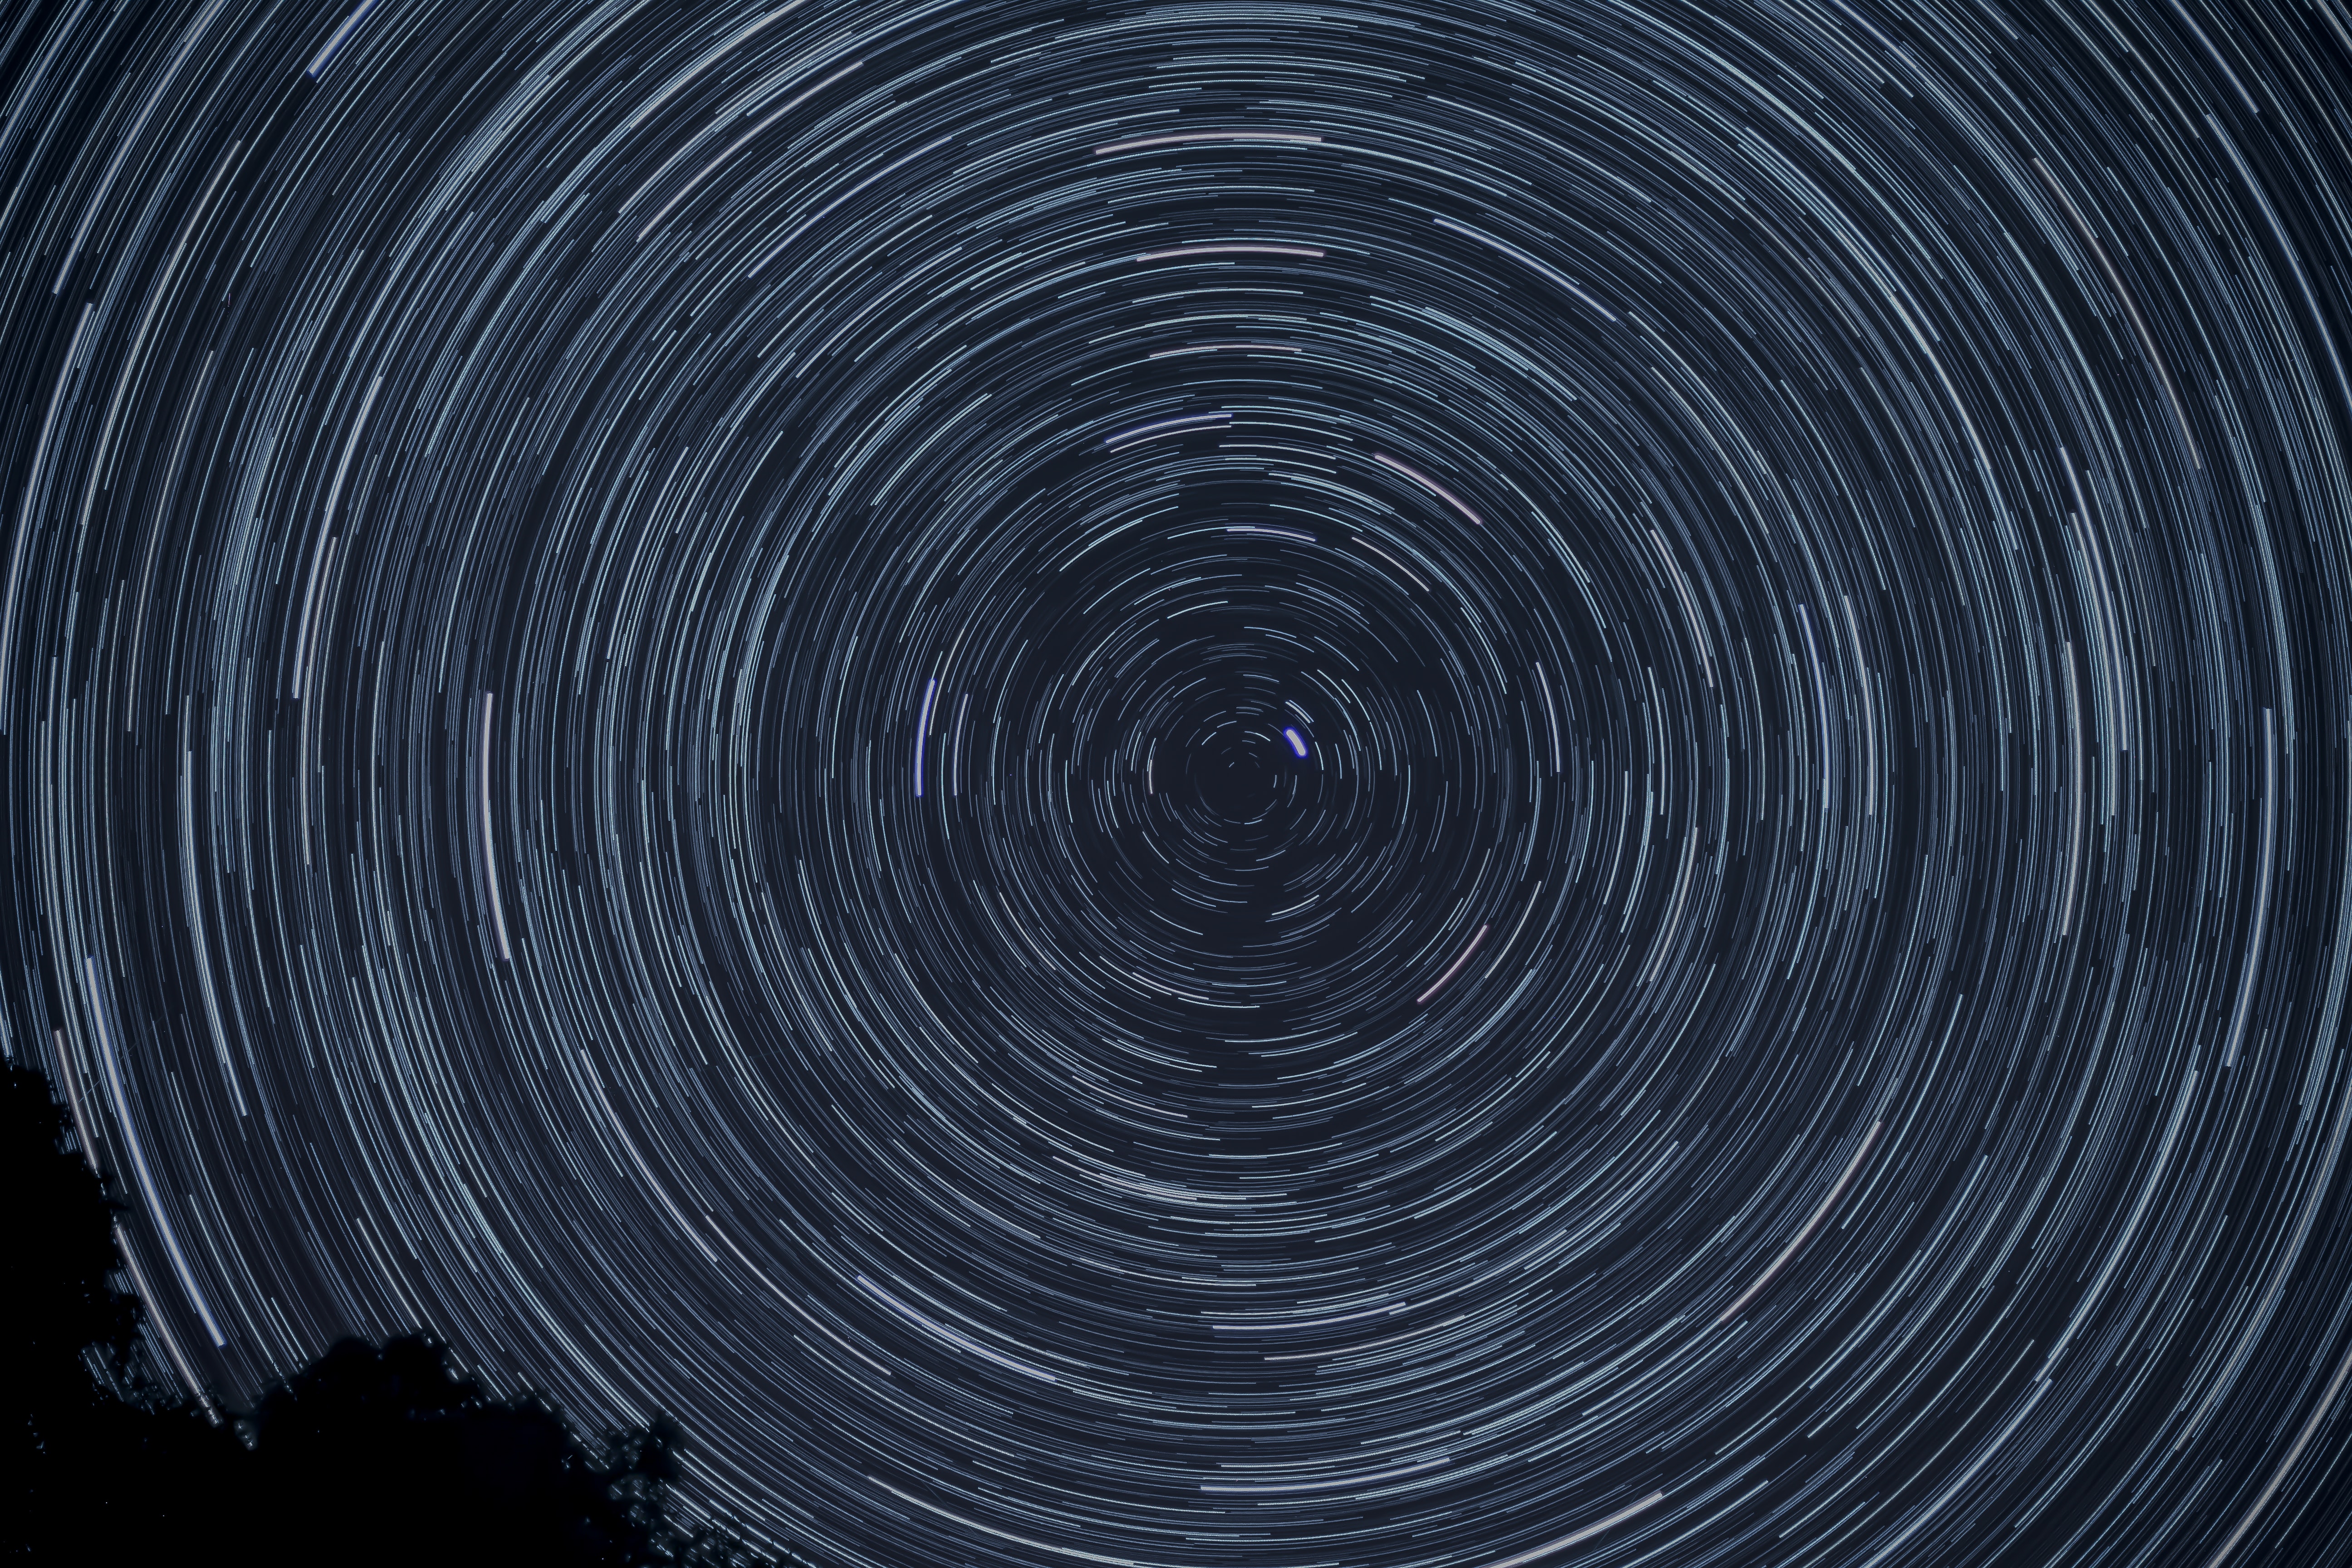 star trails wallpaper,sky,circle,spiral,space,vortex